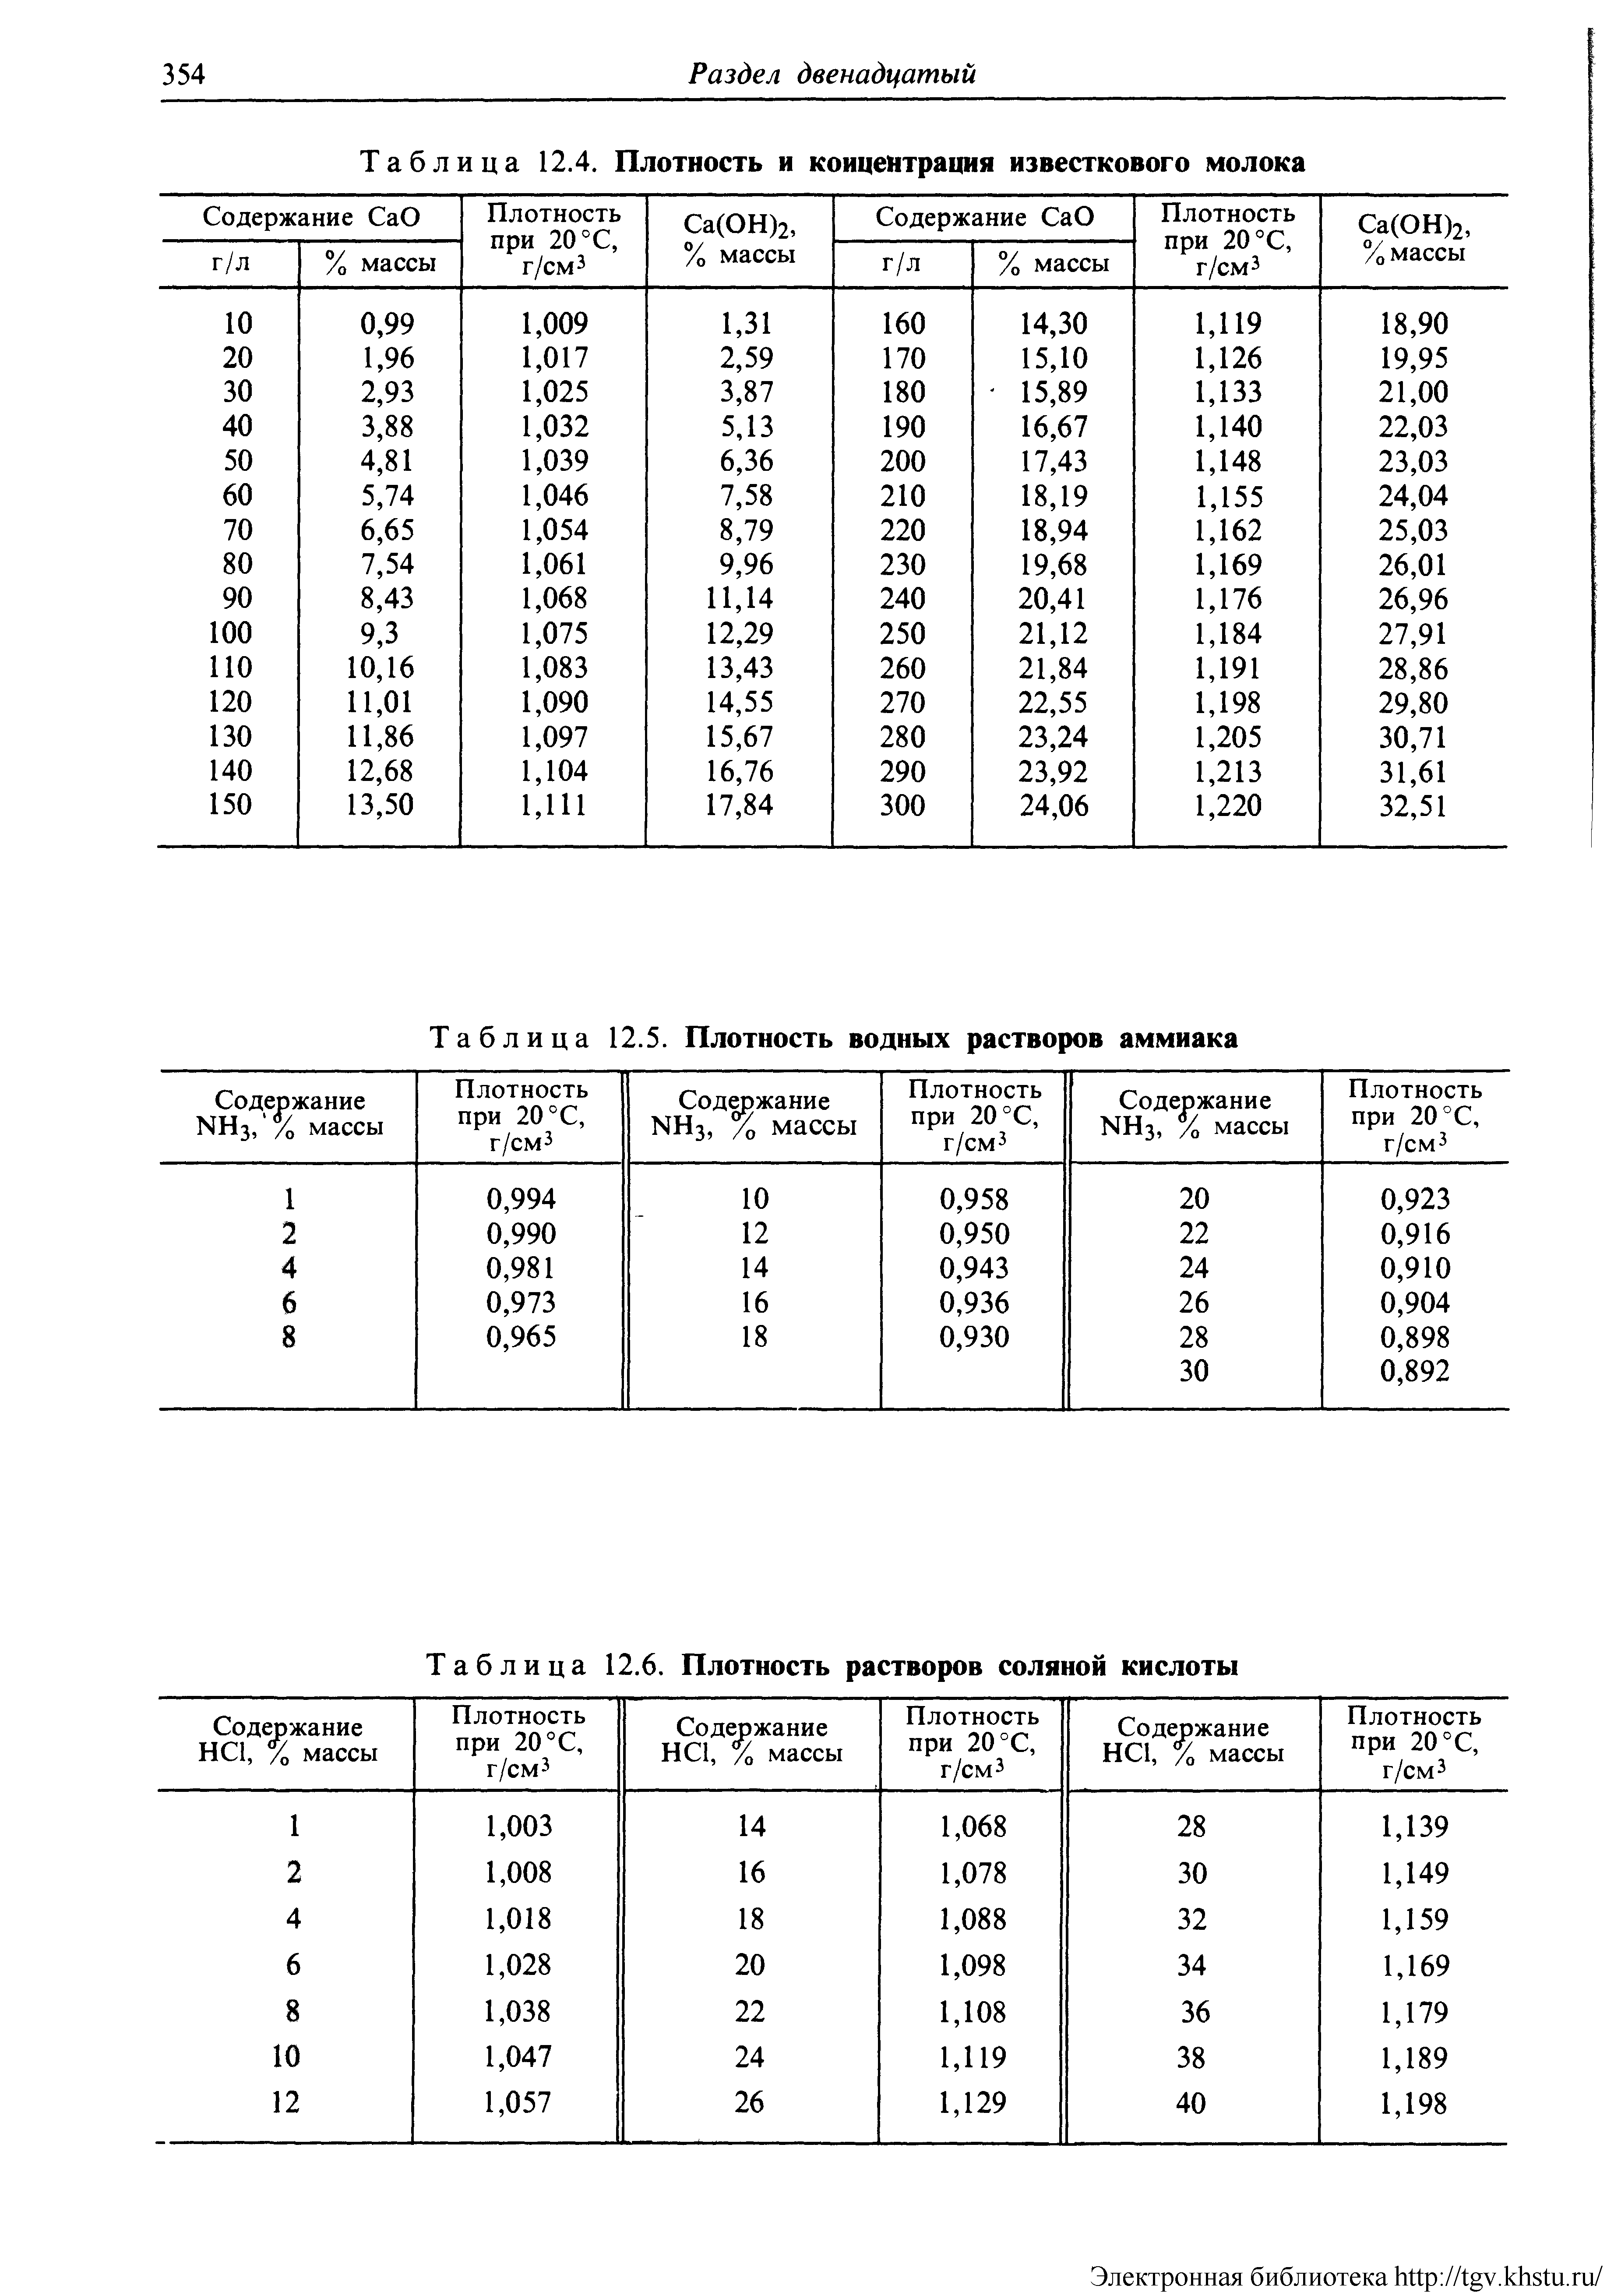 Таблица 12.6. Плотность растворов соляной кислоты
